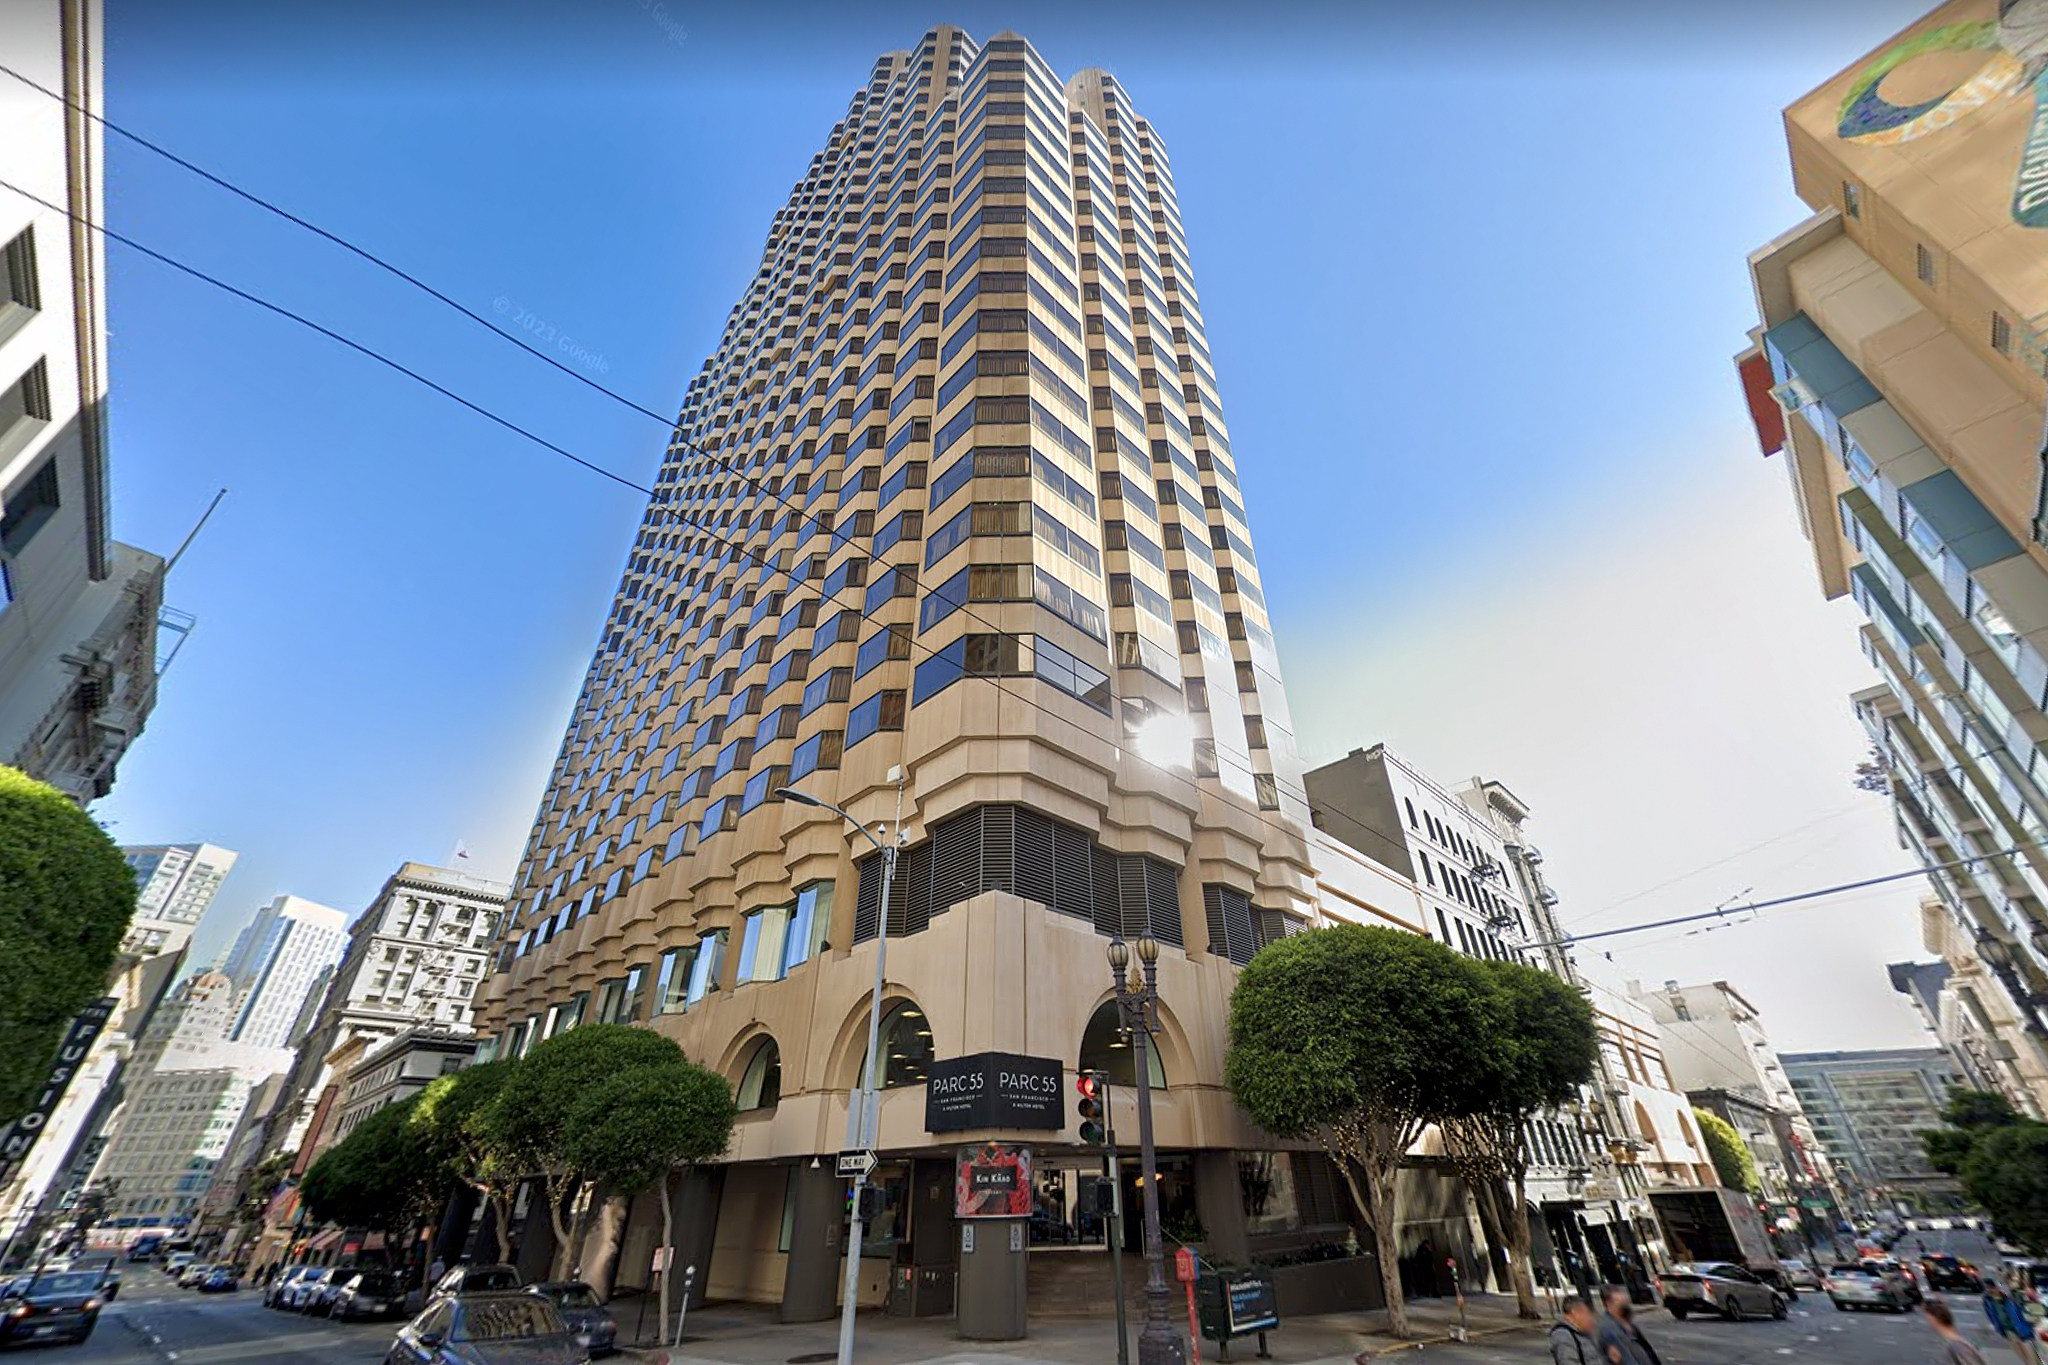 Компанија за некретнине не плаћа кредит и губи највећи хотел у Сан Франциску